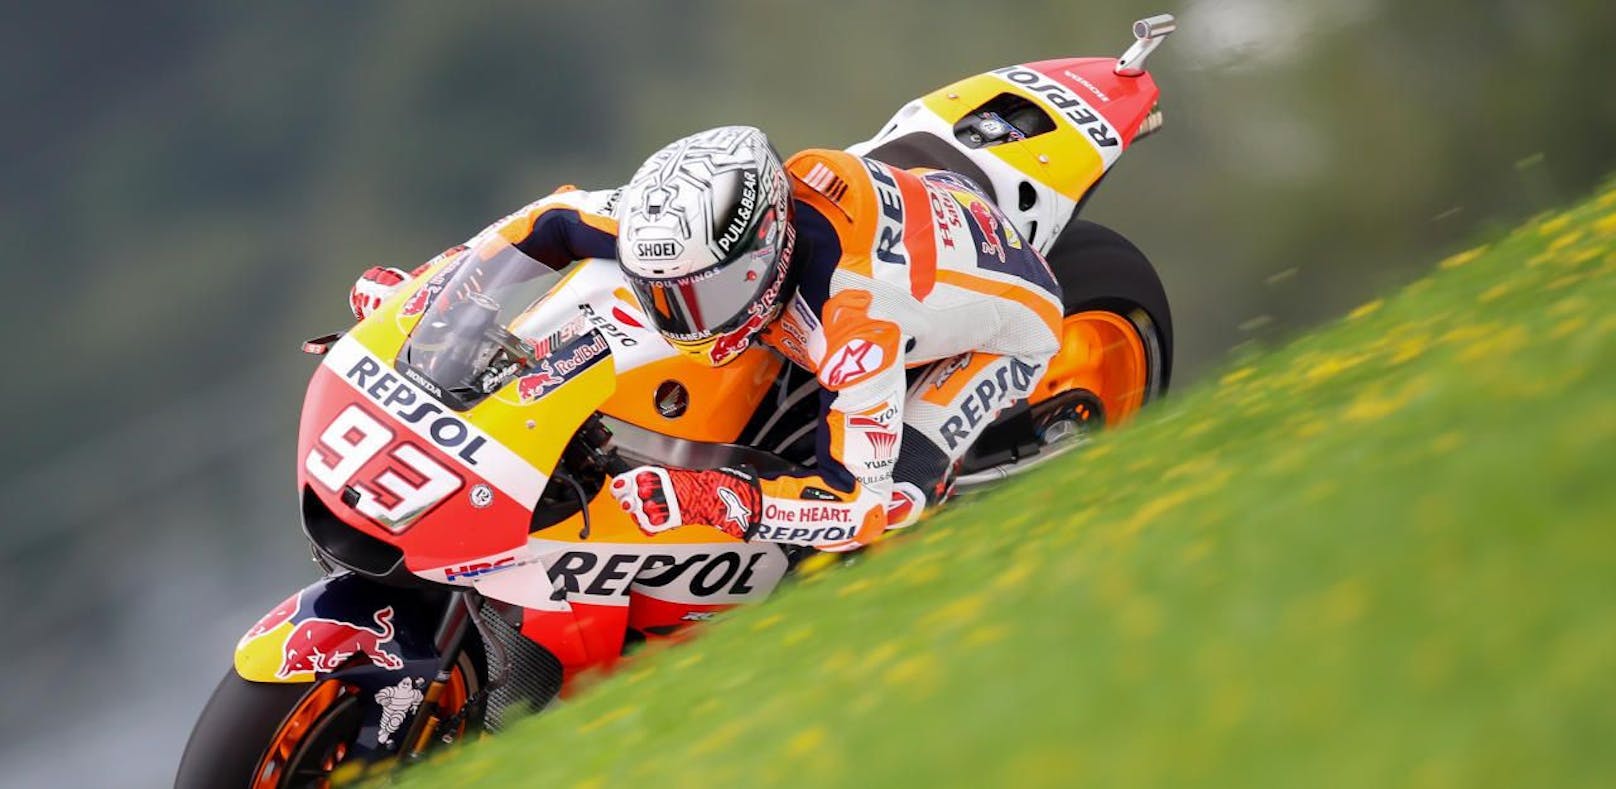 MotoGP: Marquez rast zur Rekord-Pole in Spielberg